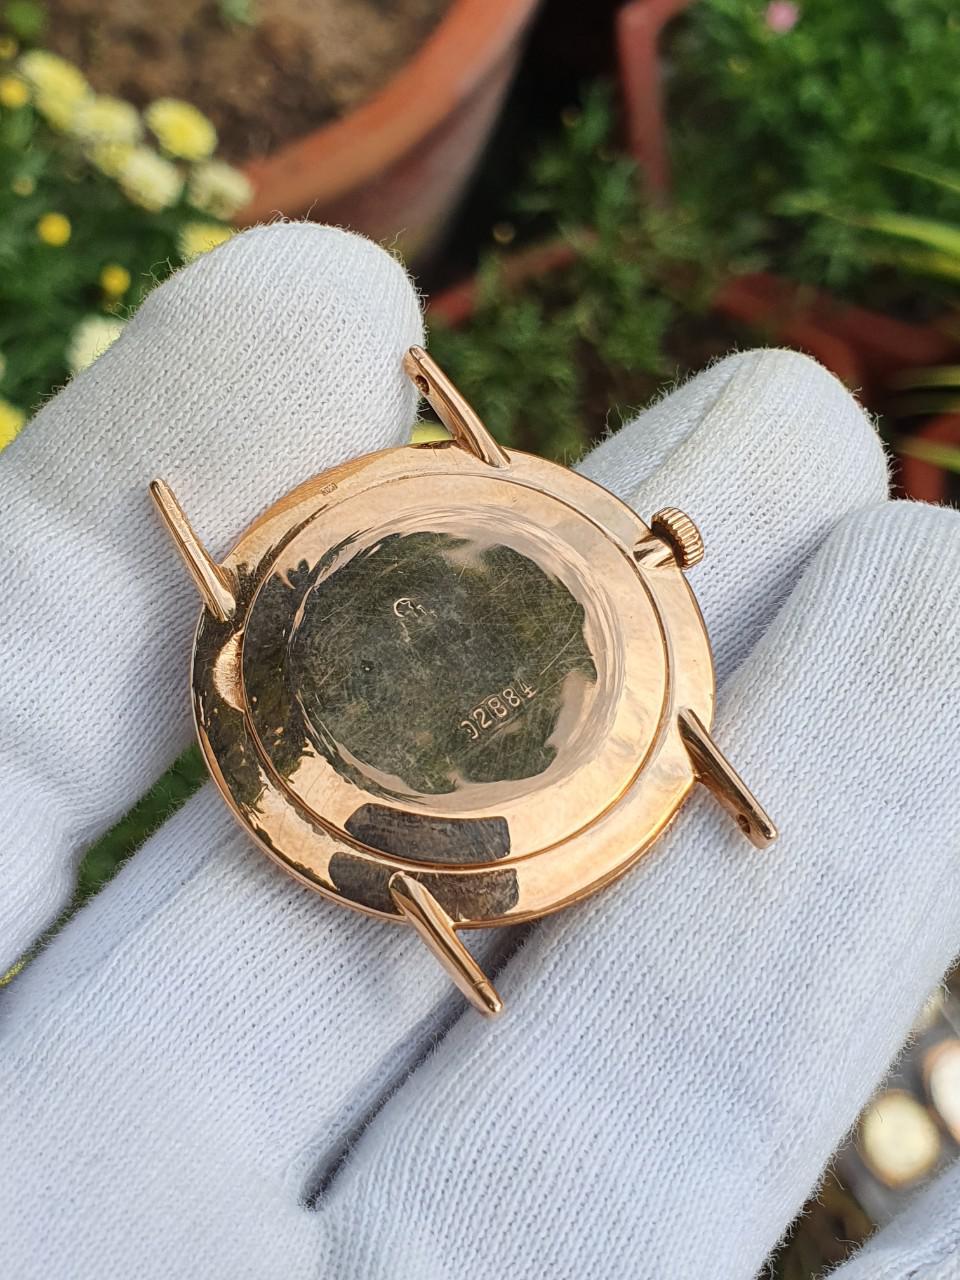 Đồng hồ liên xô vimpel vàng đúc nguyên khối siêu hiếm